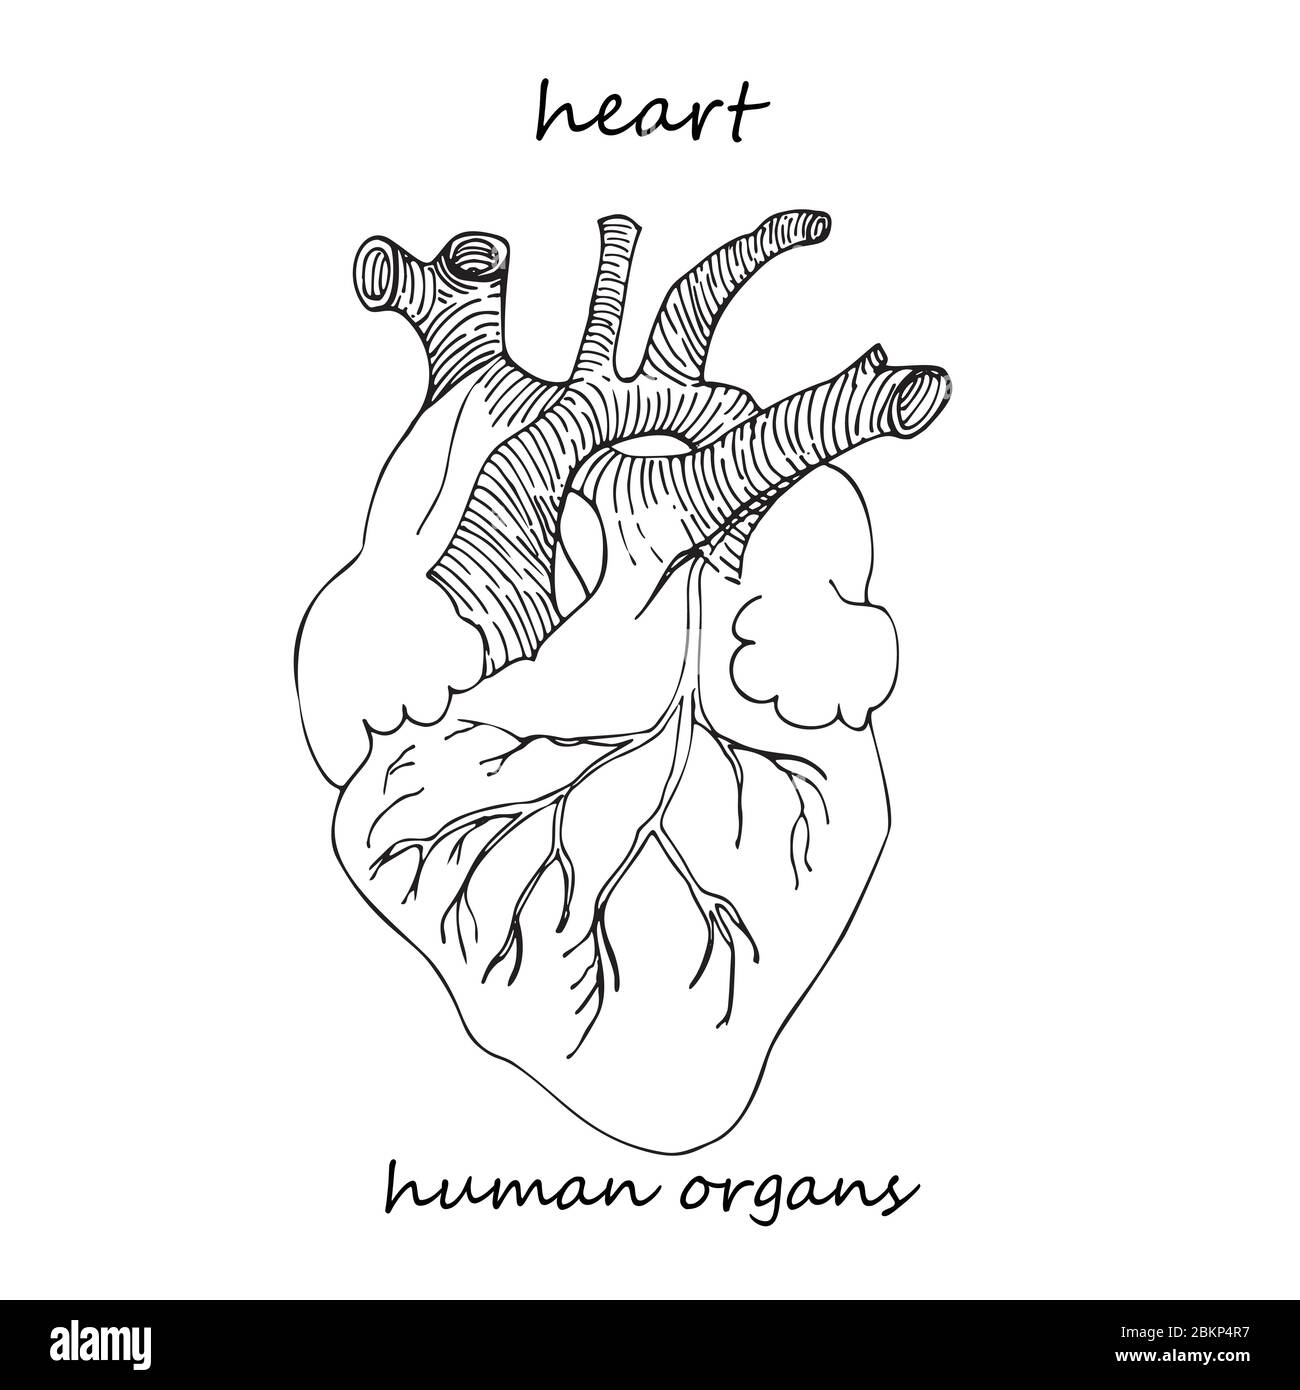 Cuore. Icona realistica disegnata a mano degli organi interni umani. Stile di schizzo della linea. Progettazione per i vostri progetti medici post riabilitazione virale Illustrazione Vettoriale